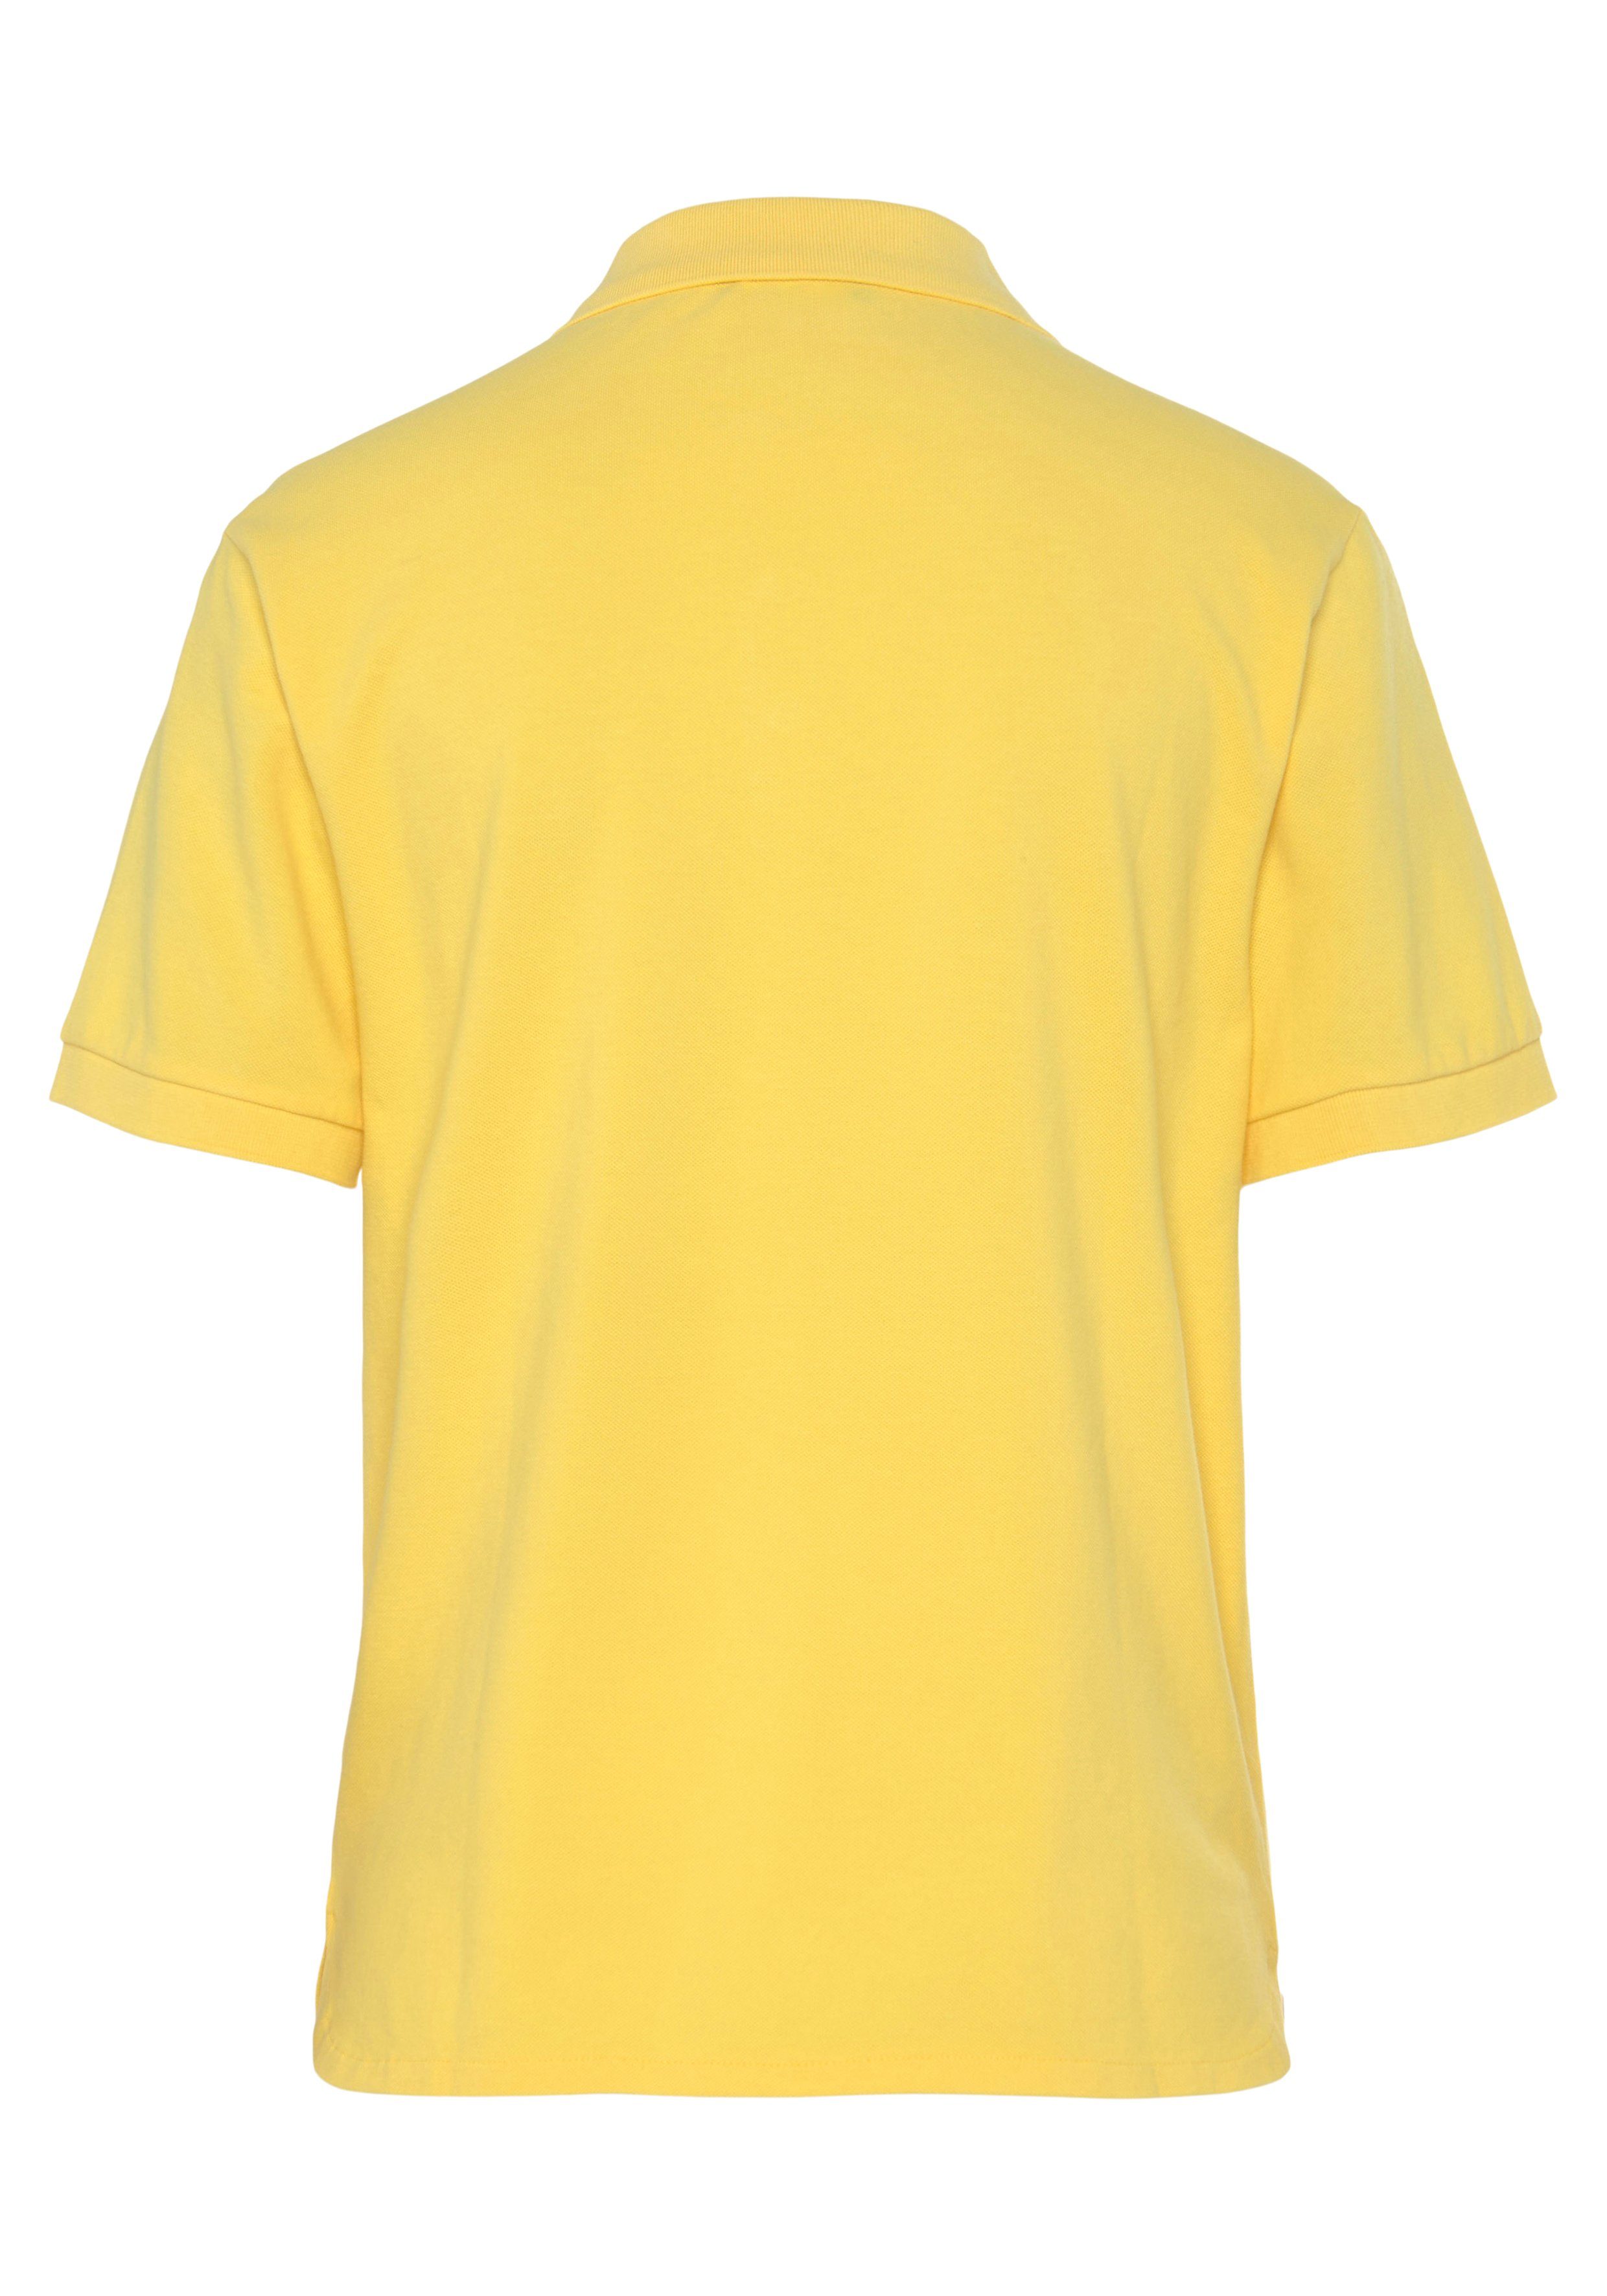 perlmuttfarbenen Colors Poloshirt Knöpfen of gelb Benetton mit United